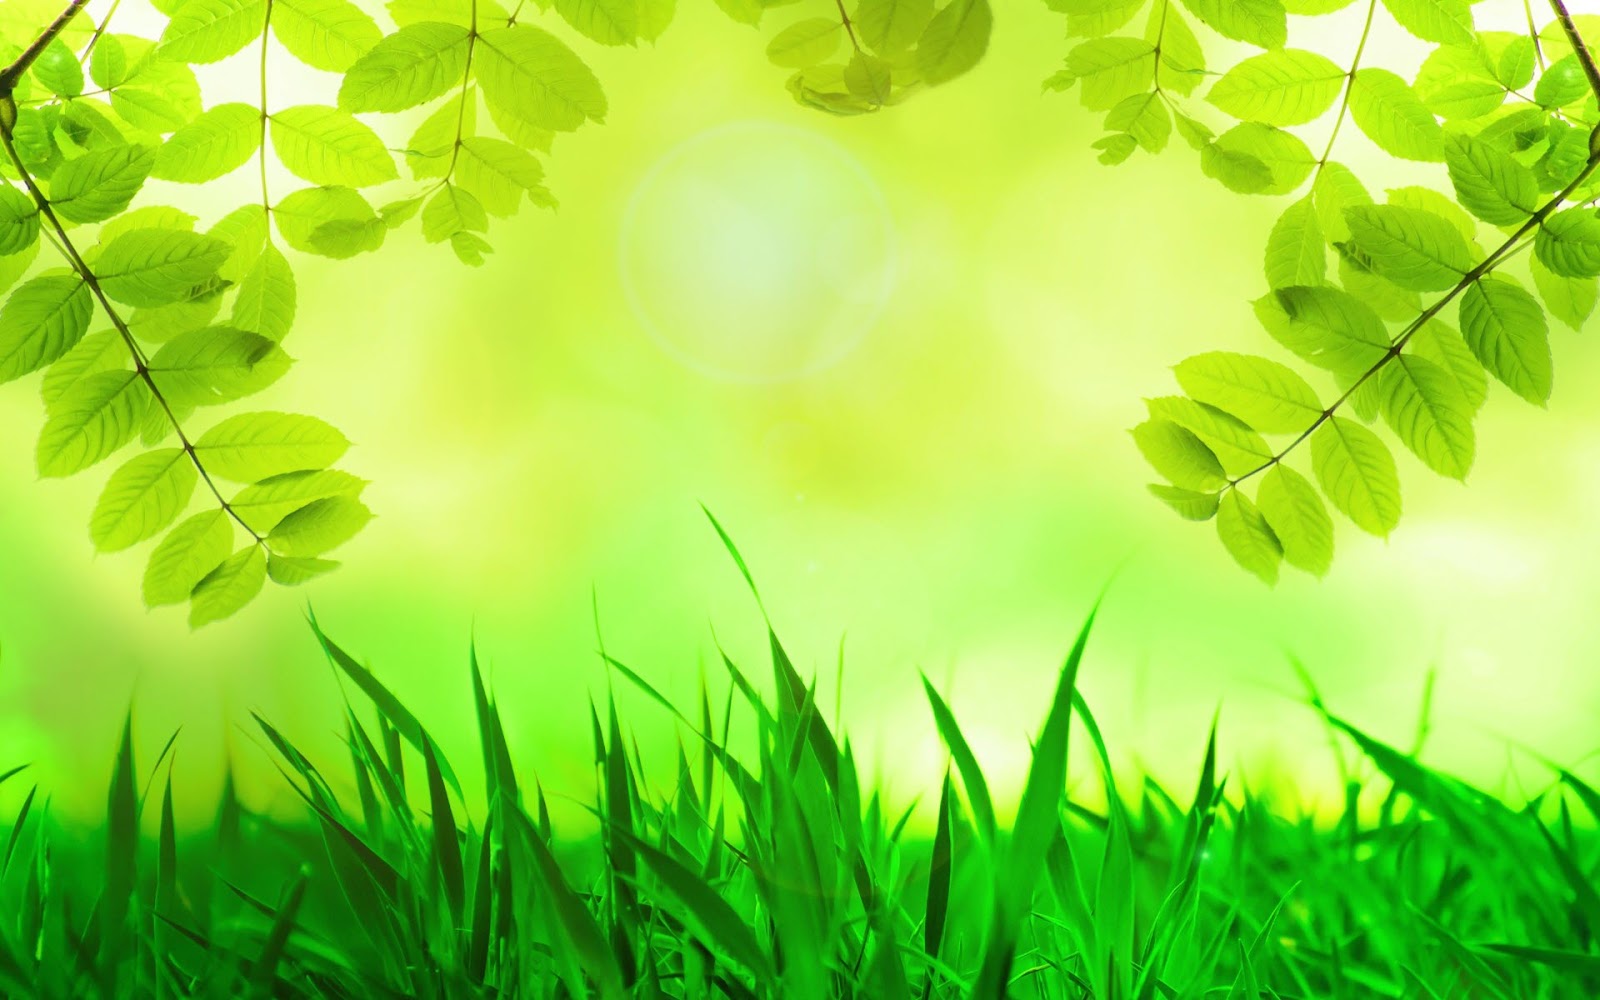 Hình ảnh cây xanh và môi trường sống